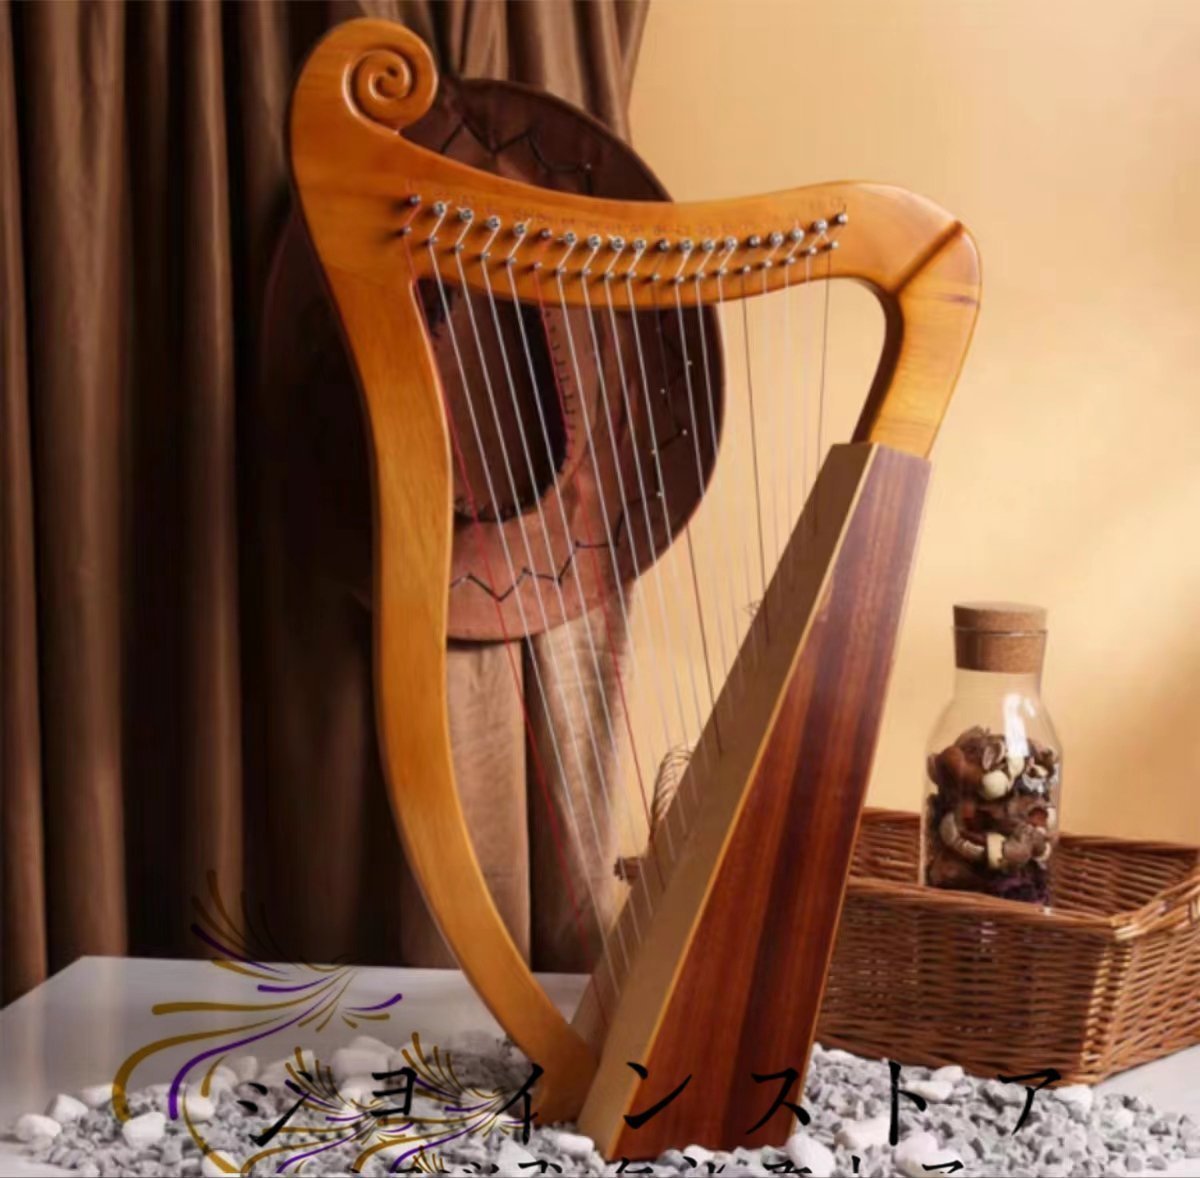  высококлассный товар! высококлассный арфа арфа музыкальные инструменты laia- музыкальные инструменты . кото 19 цветный Rya gold из дерева арфа .